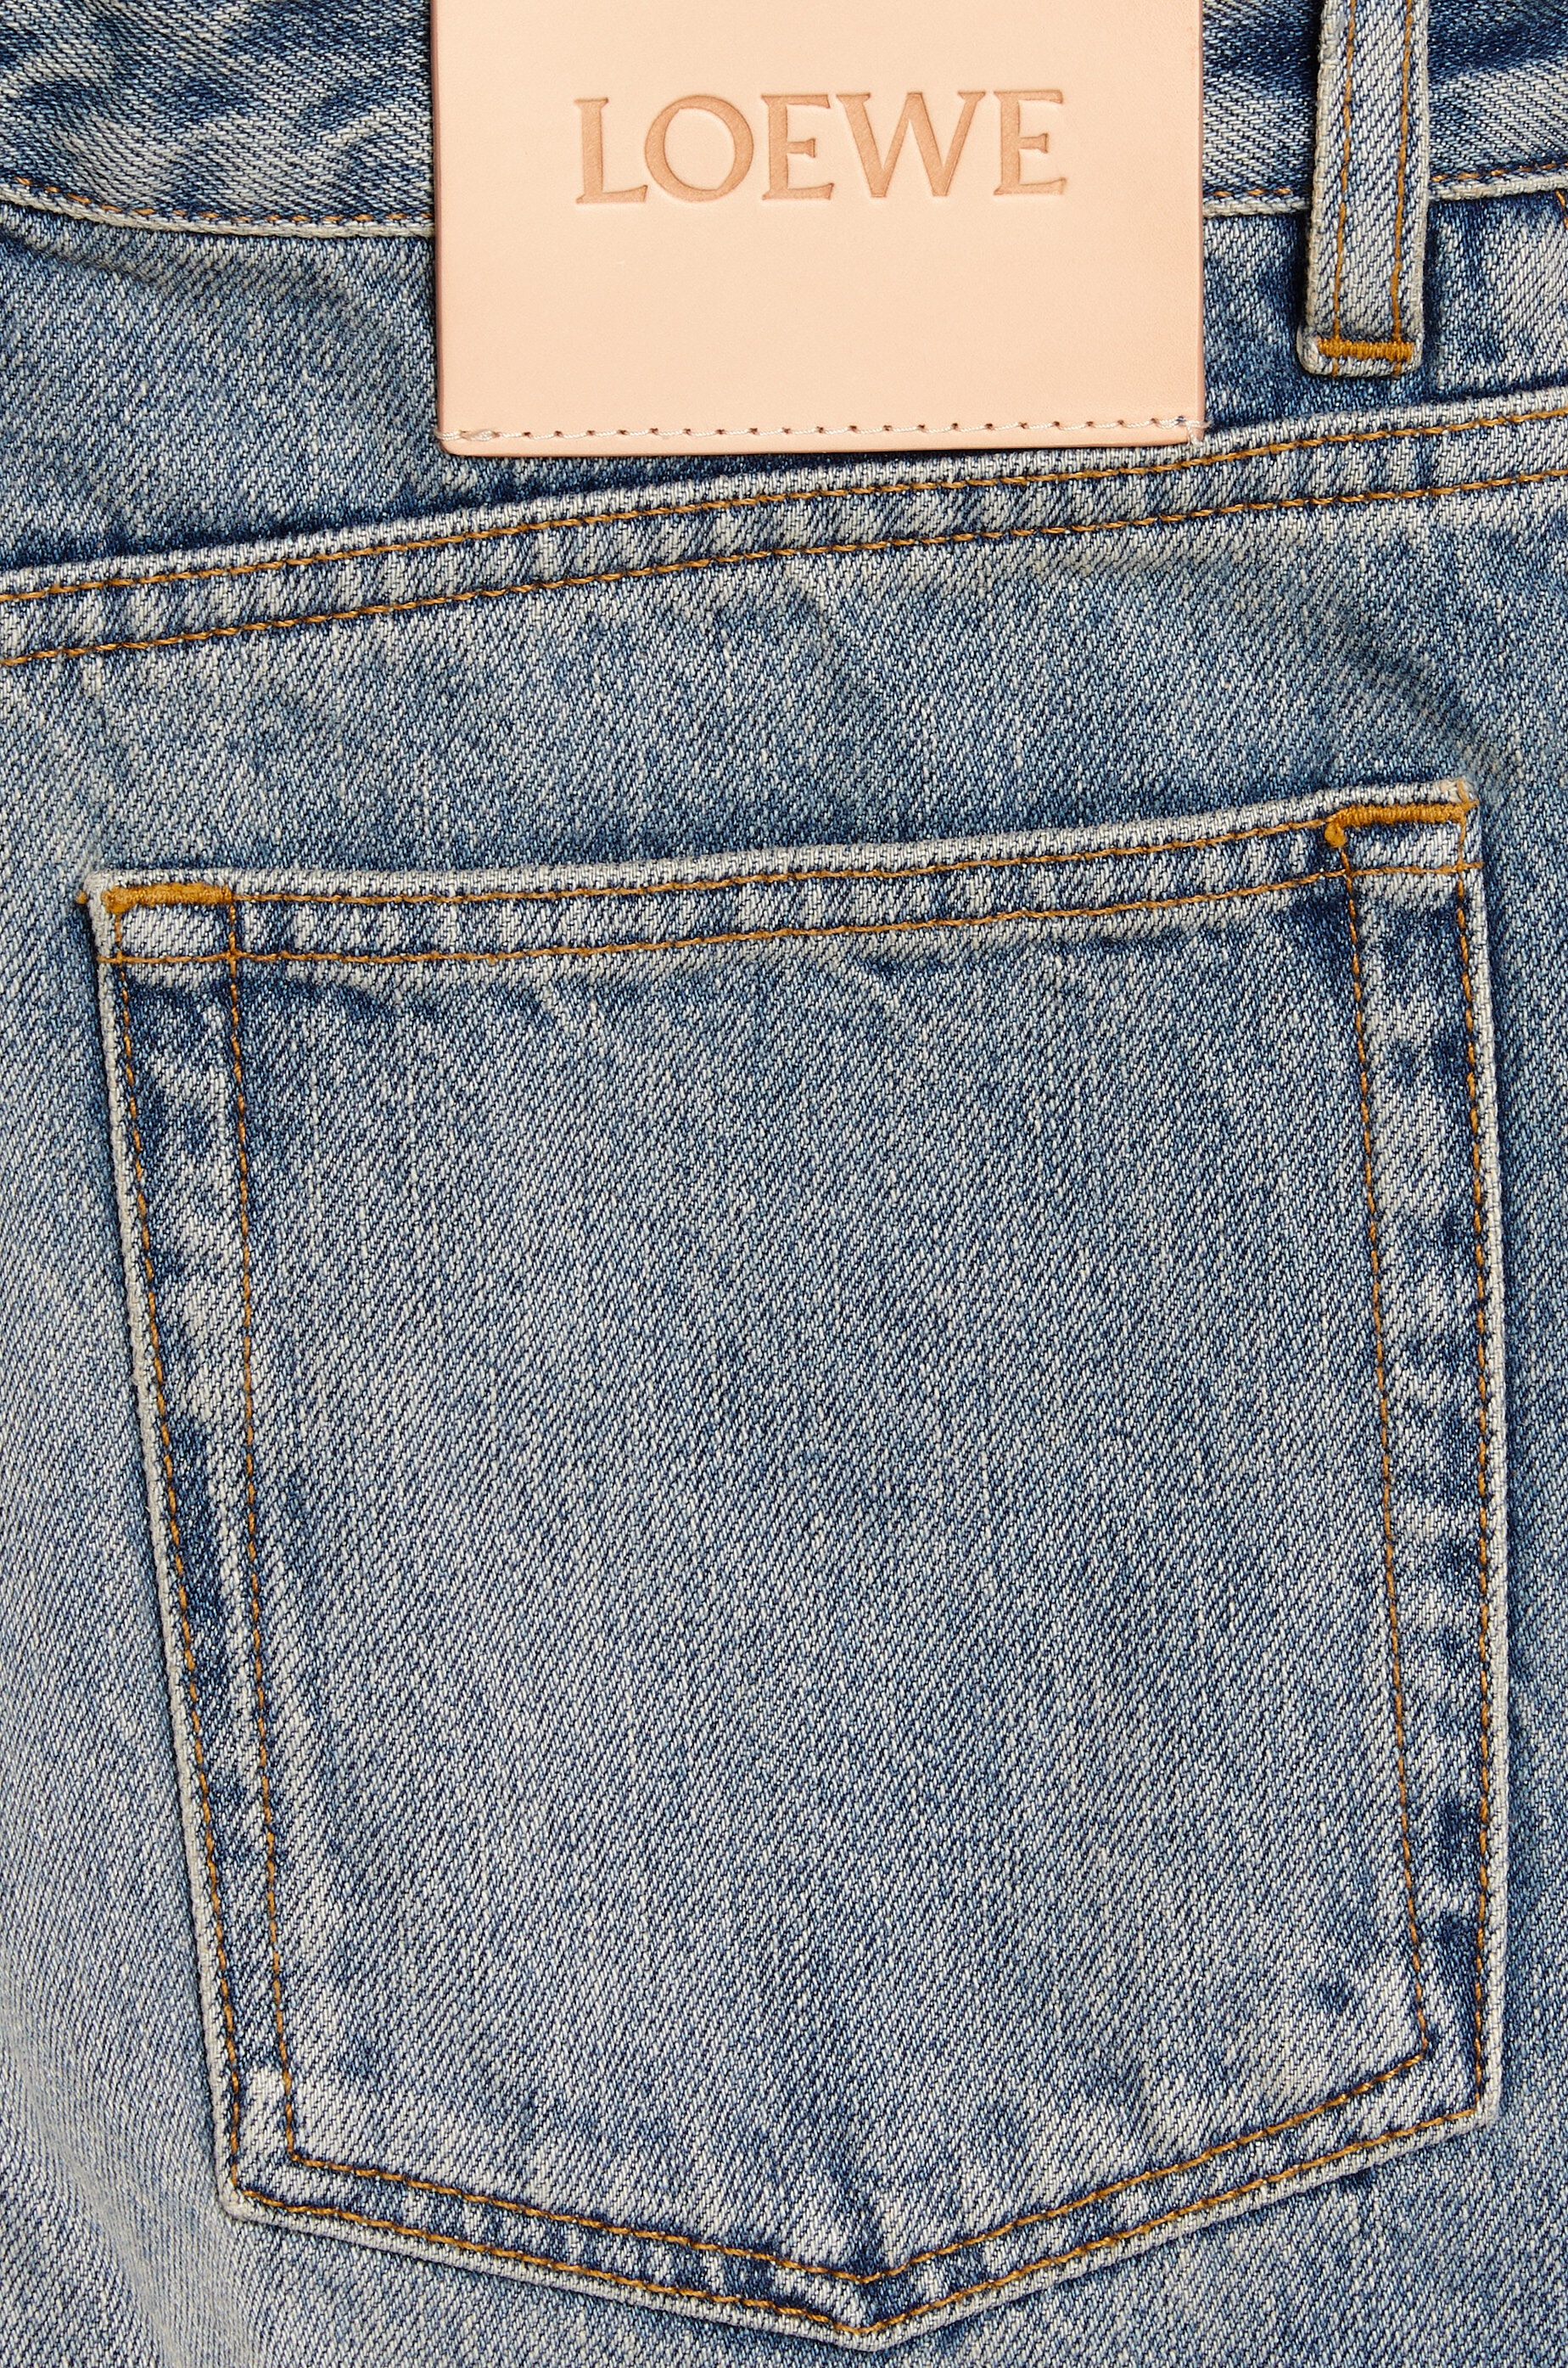 Wide leg jeans in denim - 3